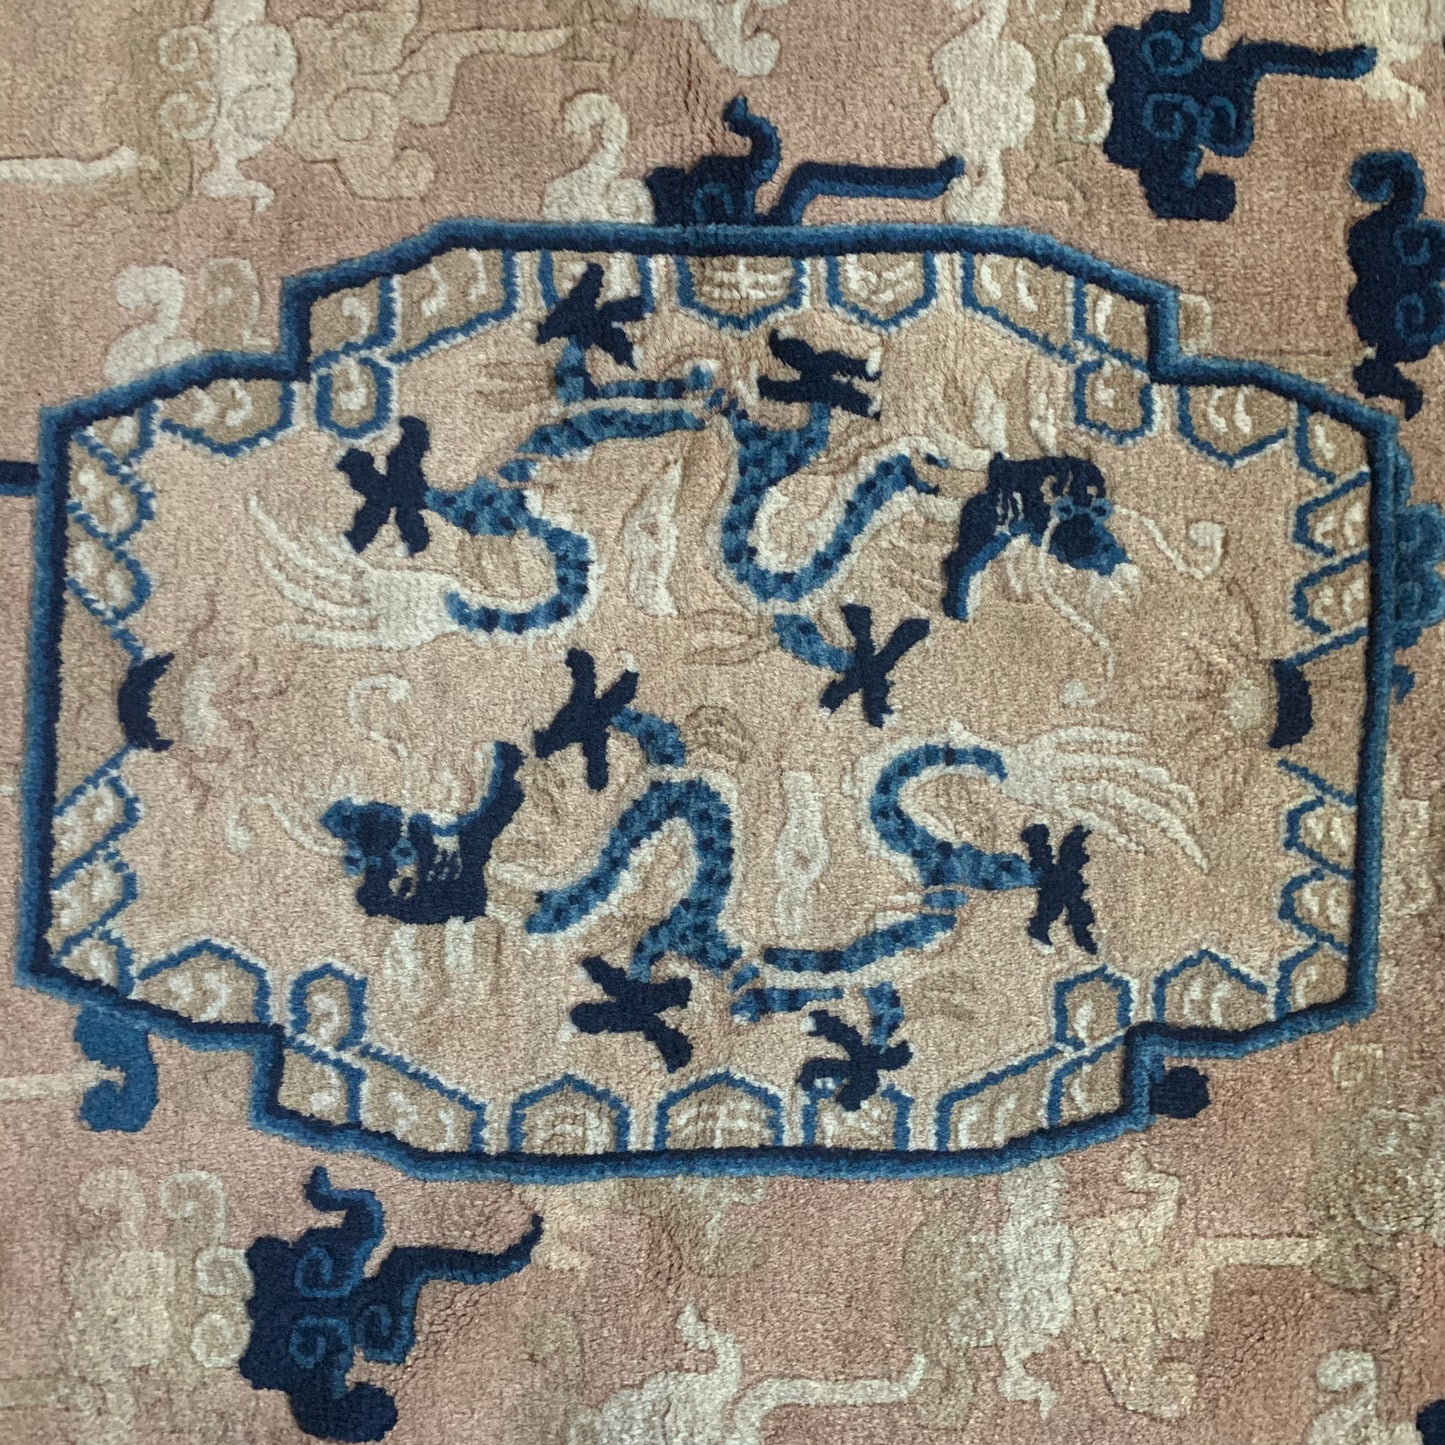 An antique ningxia dragon rug